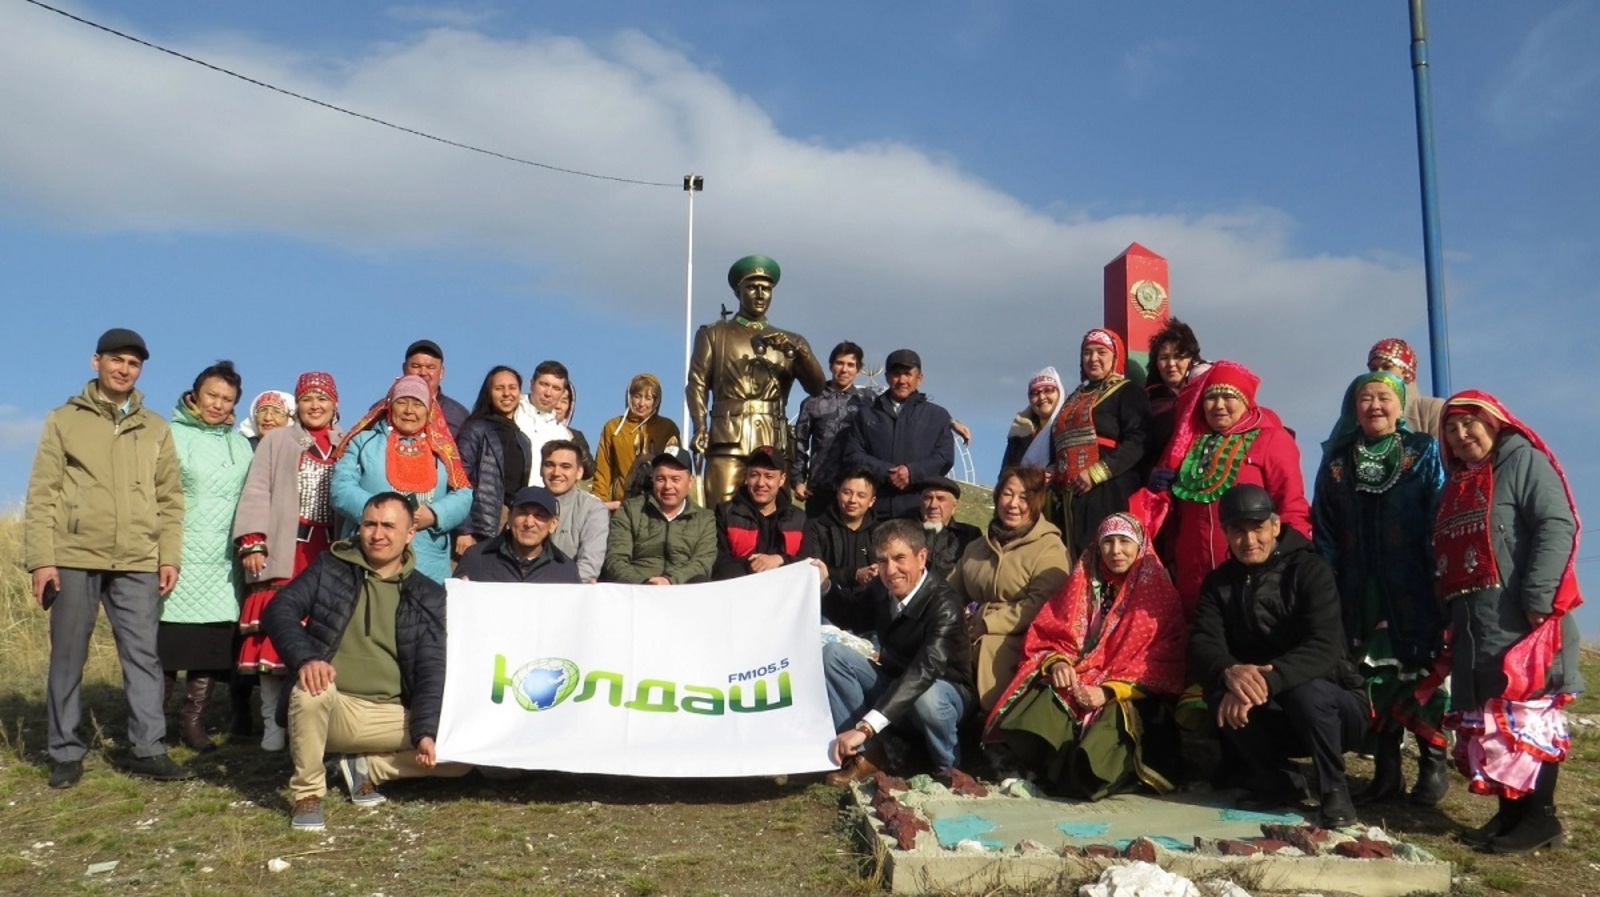 В Башкирии вручили приз деревне-победителю радио-конкурса, посвященного Году полезных дел